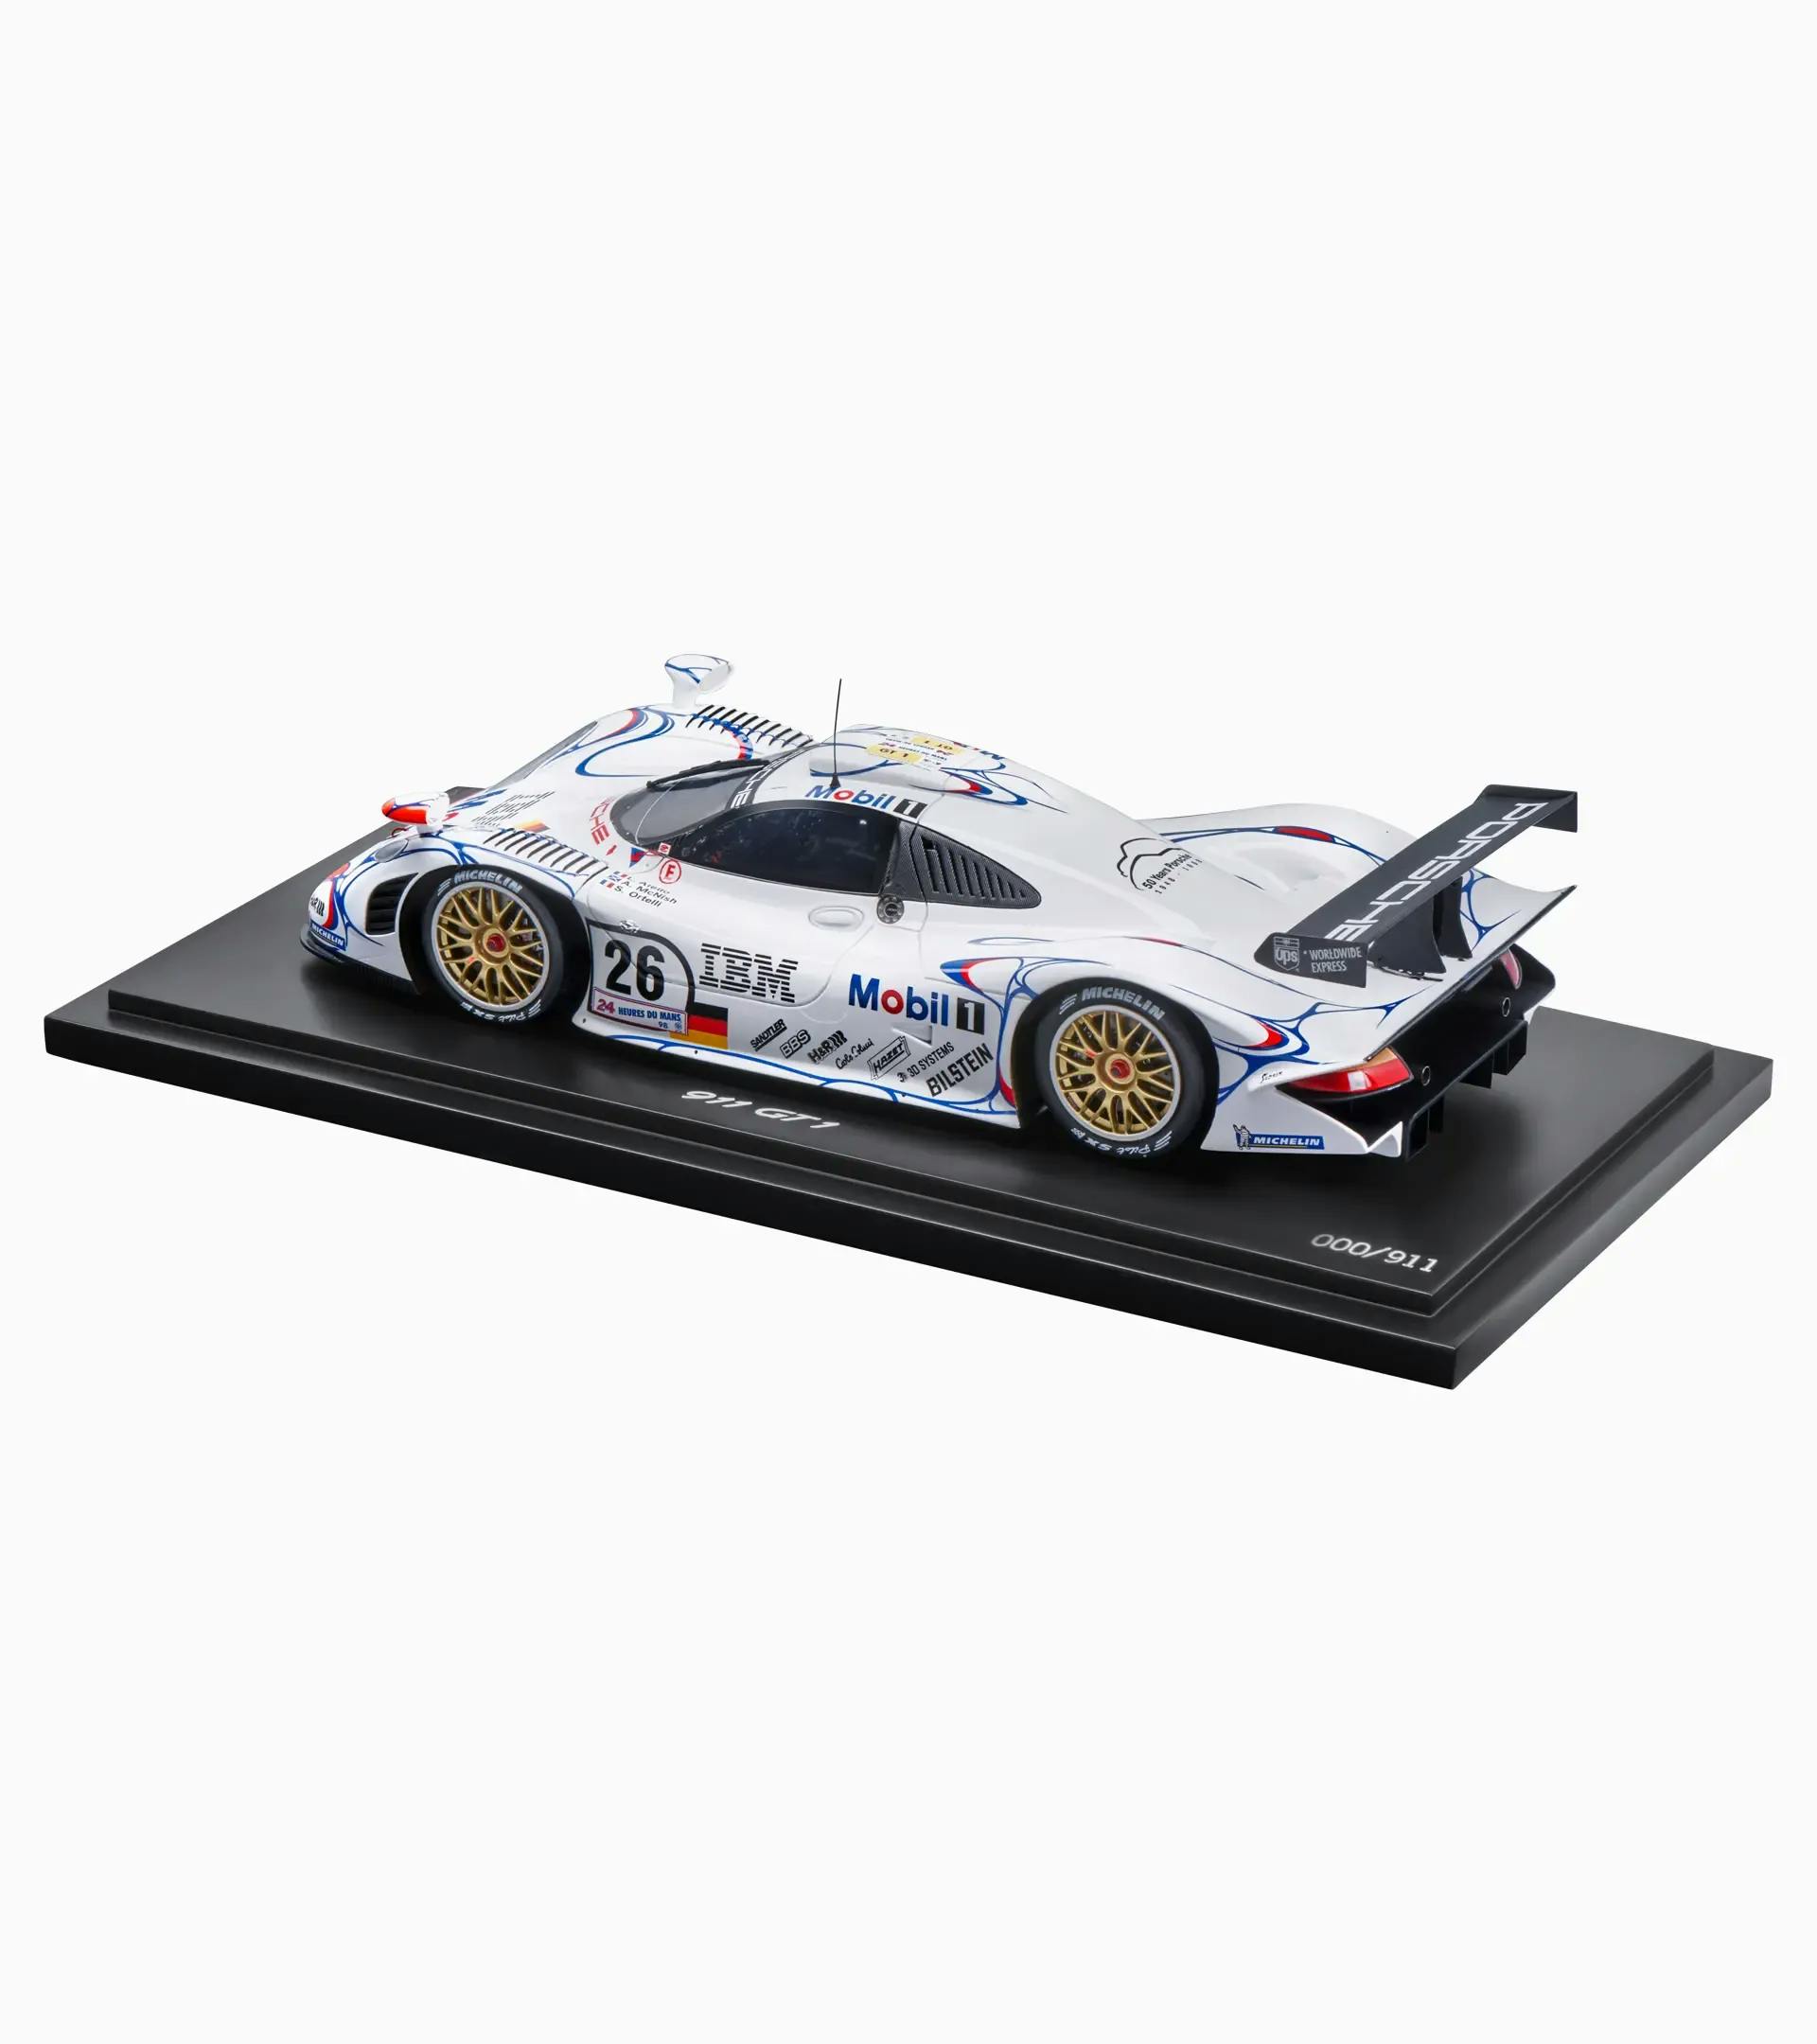 Porsche 911 GT1'98 ganador de las 24 Horas de Le Mans de 1998 – Edición Limitada 2